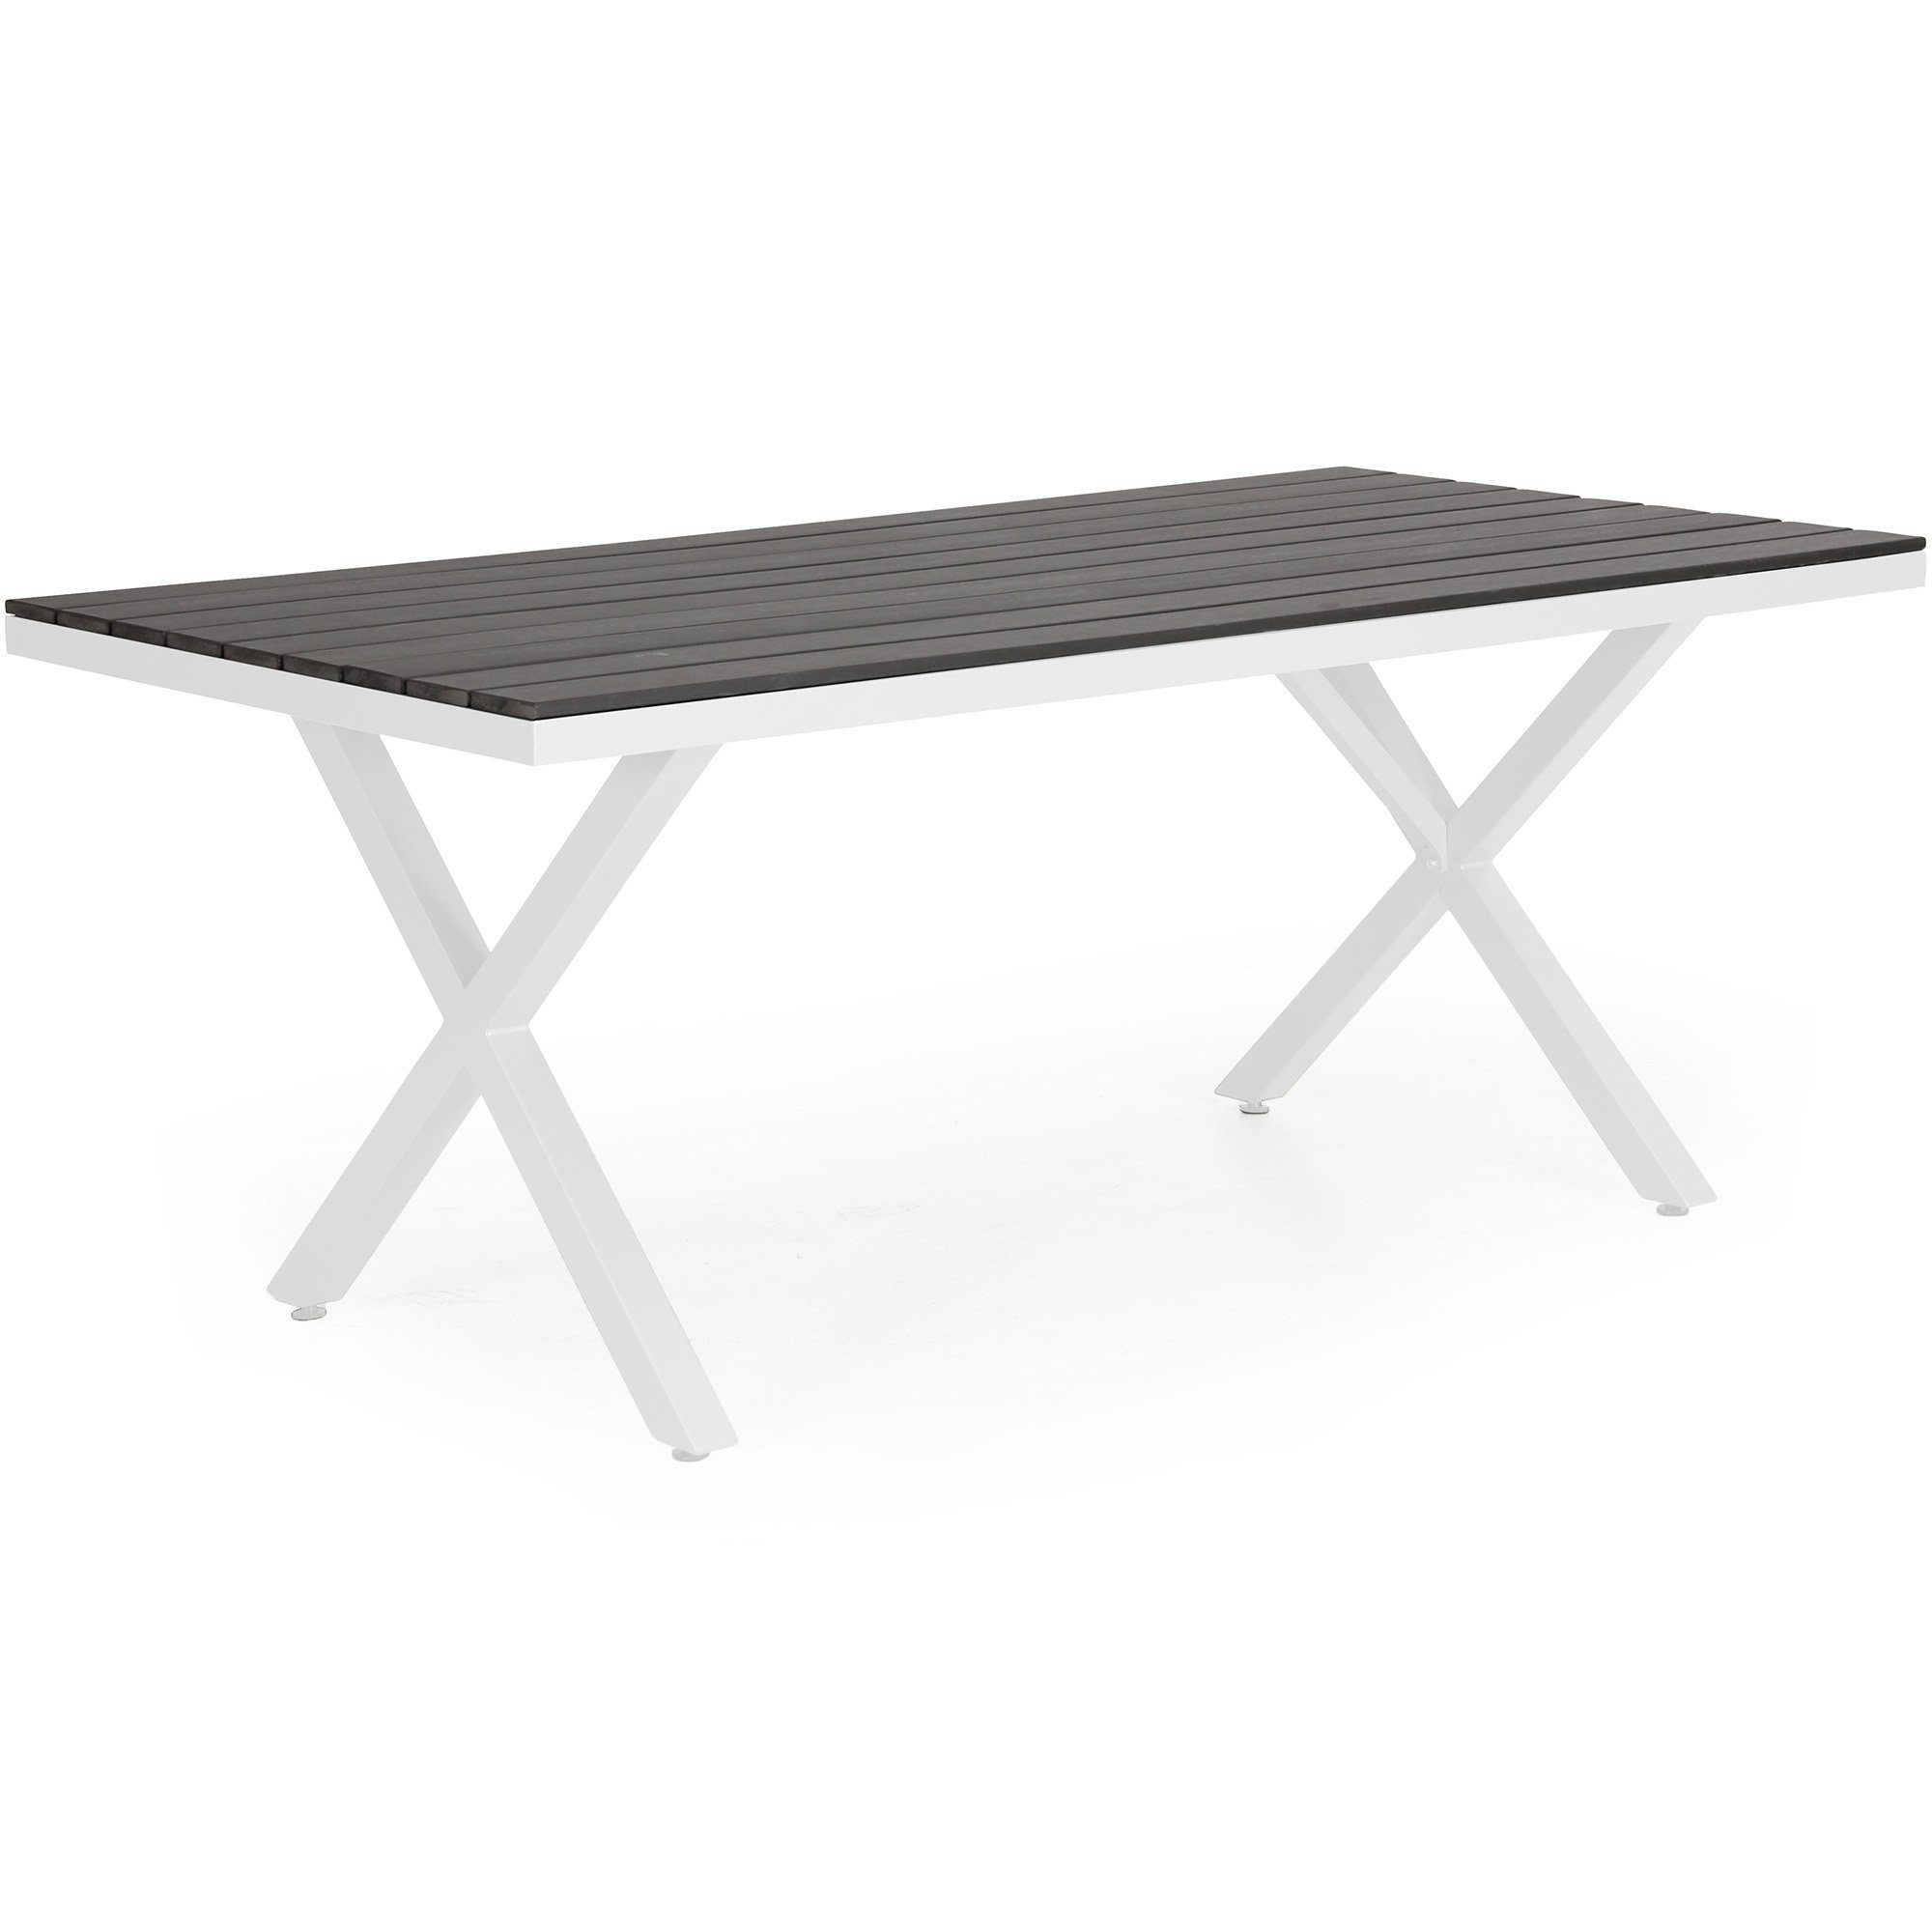 Stort matbord i aluminium och nonwood från Brafab.